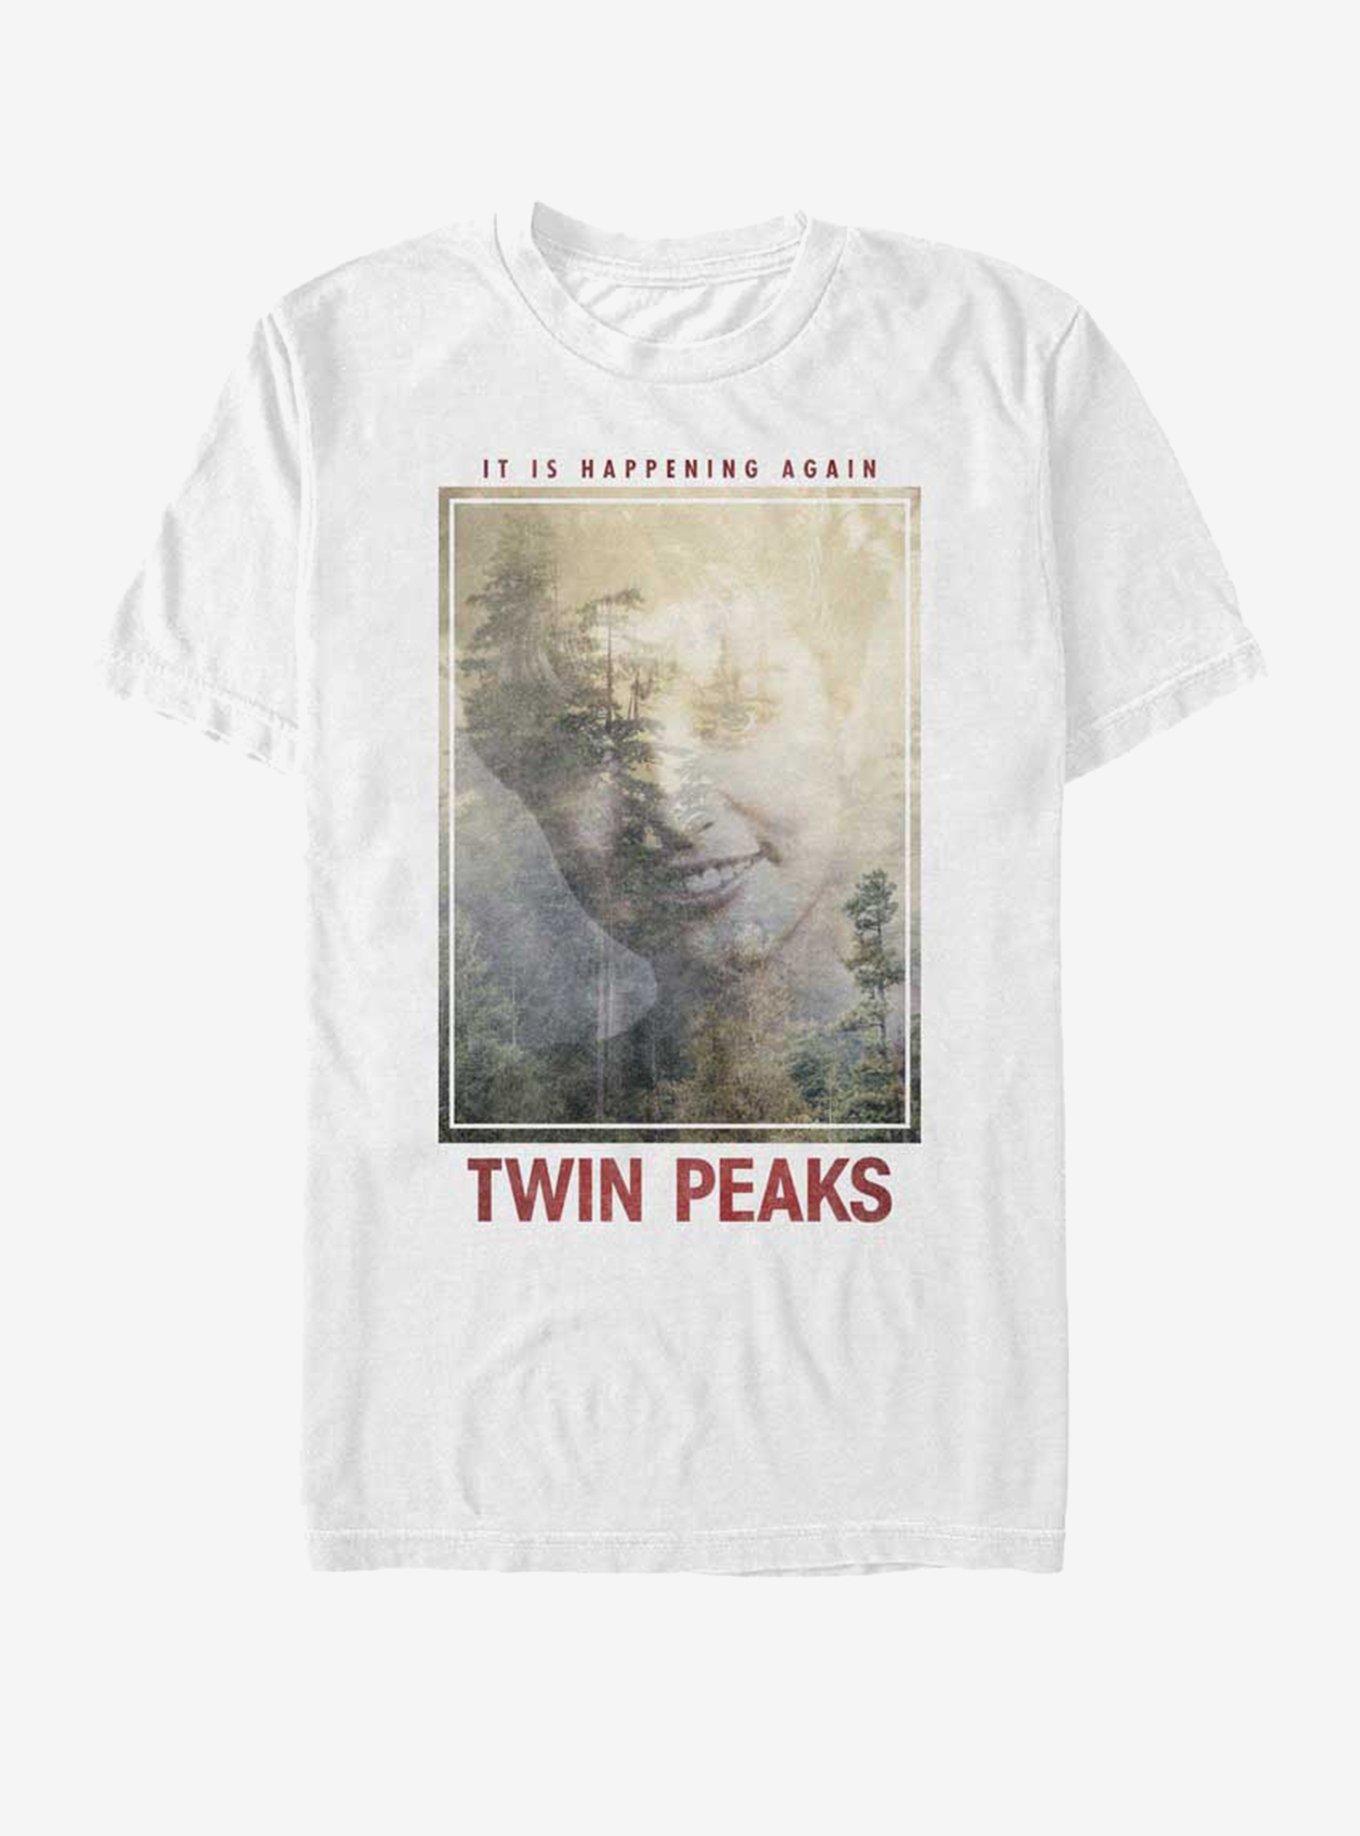 Twin Peaks Happening Again T-Shirt, WHITE, hi-res